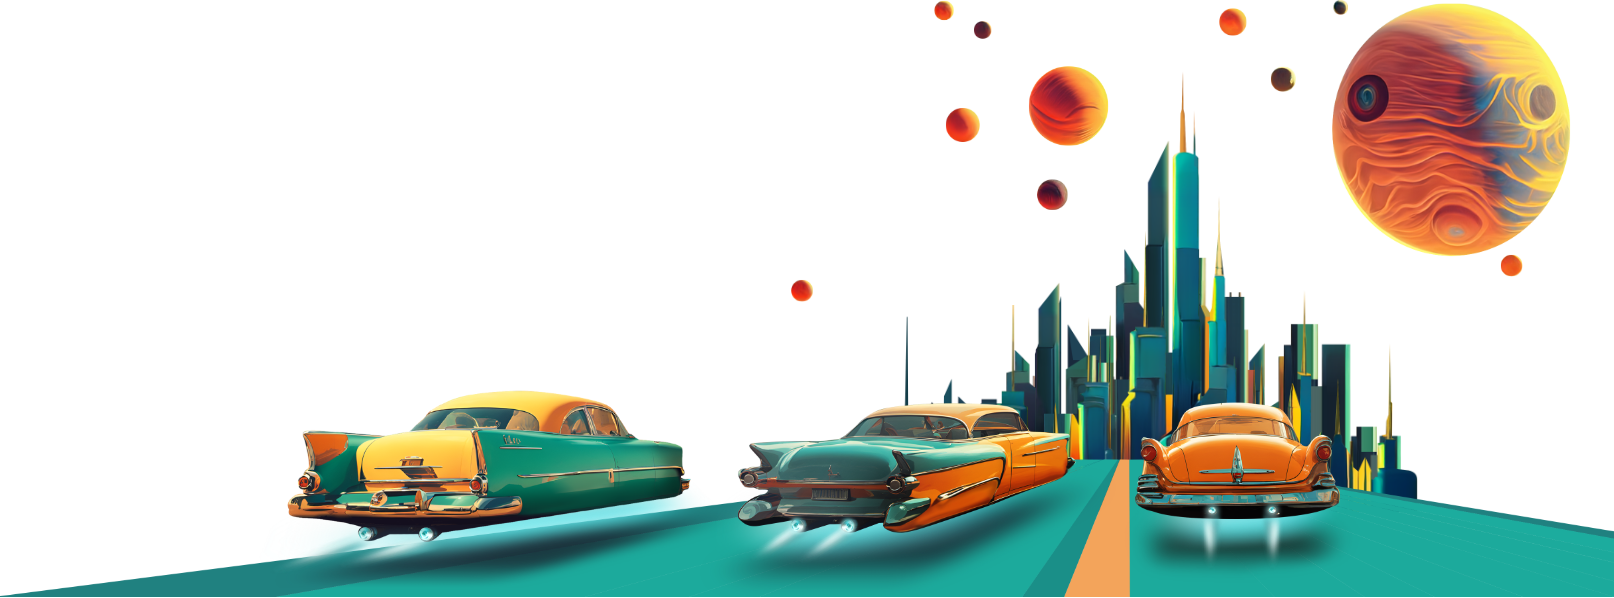 Drei fliegende Autos gleiten auf eine Stadt der Zukunft am Horizont zu. Am Himmel sind mehrere Monde und Planeten zu sehen.